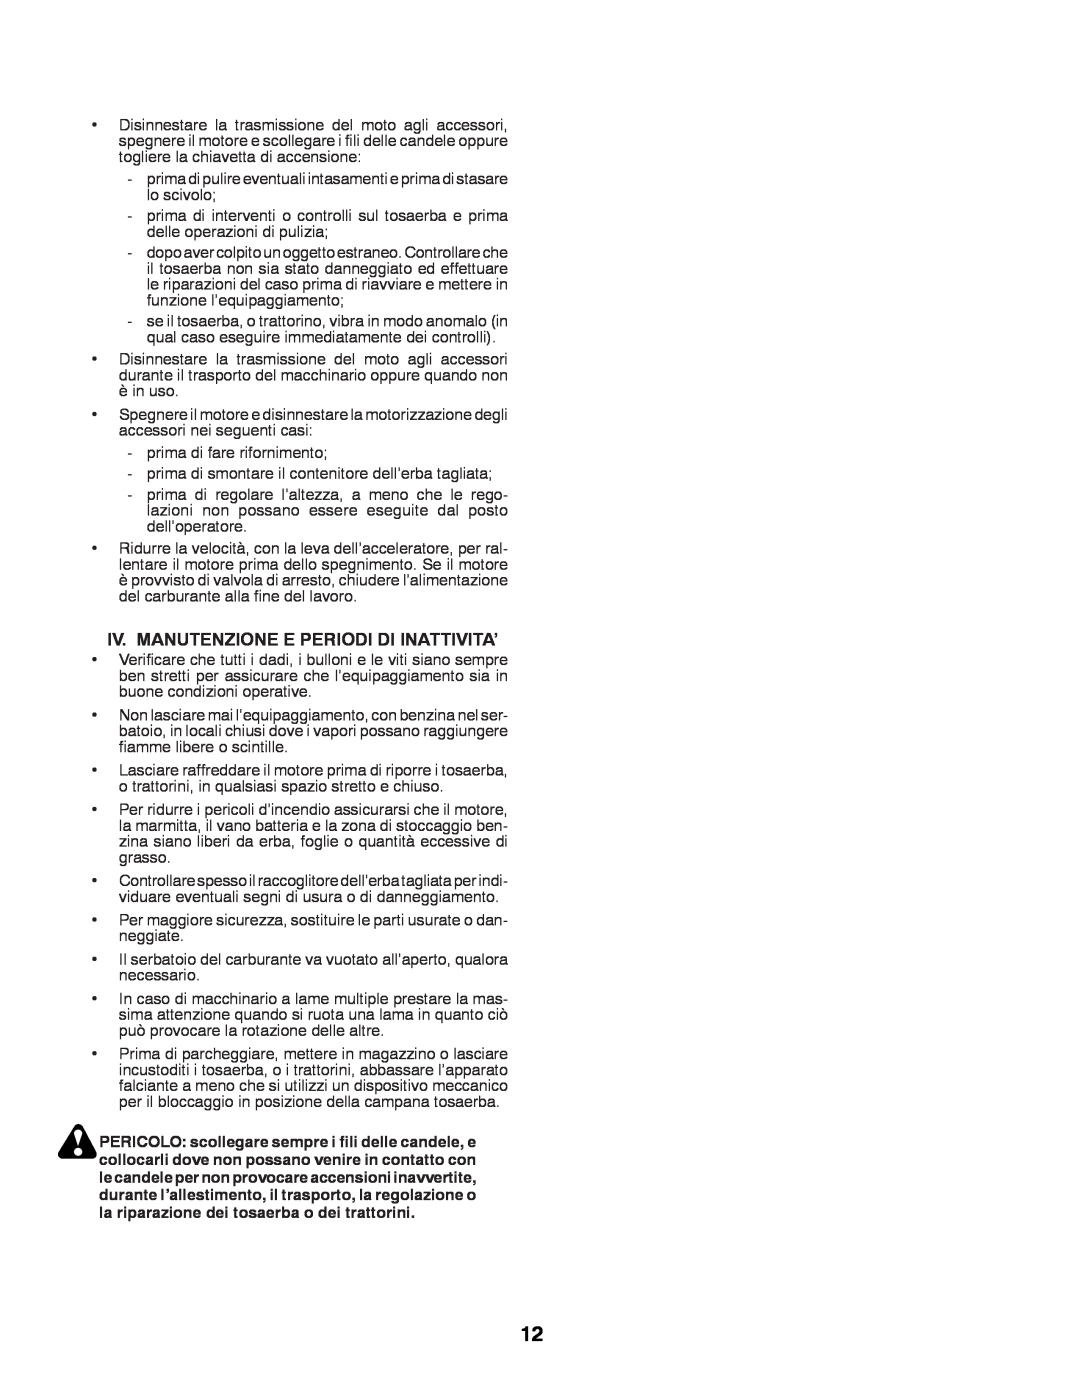 Husqvarna CTH200 TWIN, CTH180 TWIN instruction manual Iv. Manutenzione E Periodi Di Inattivita’ 